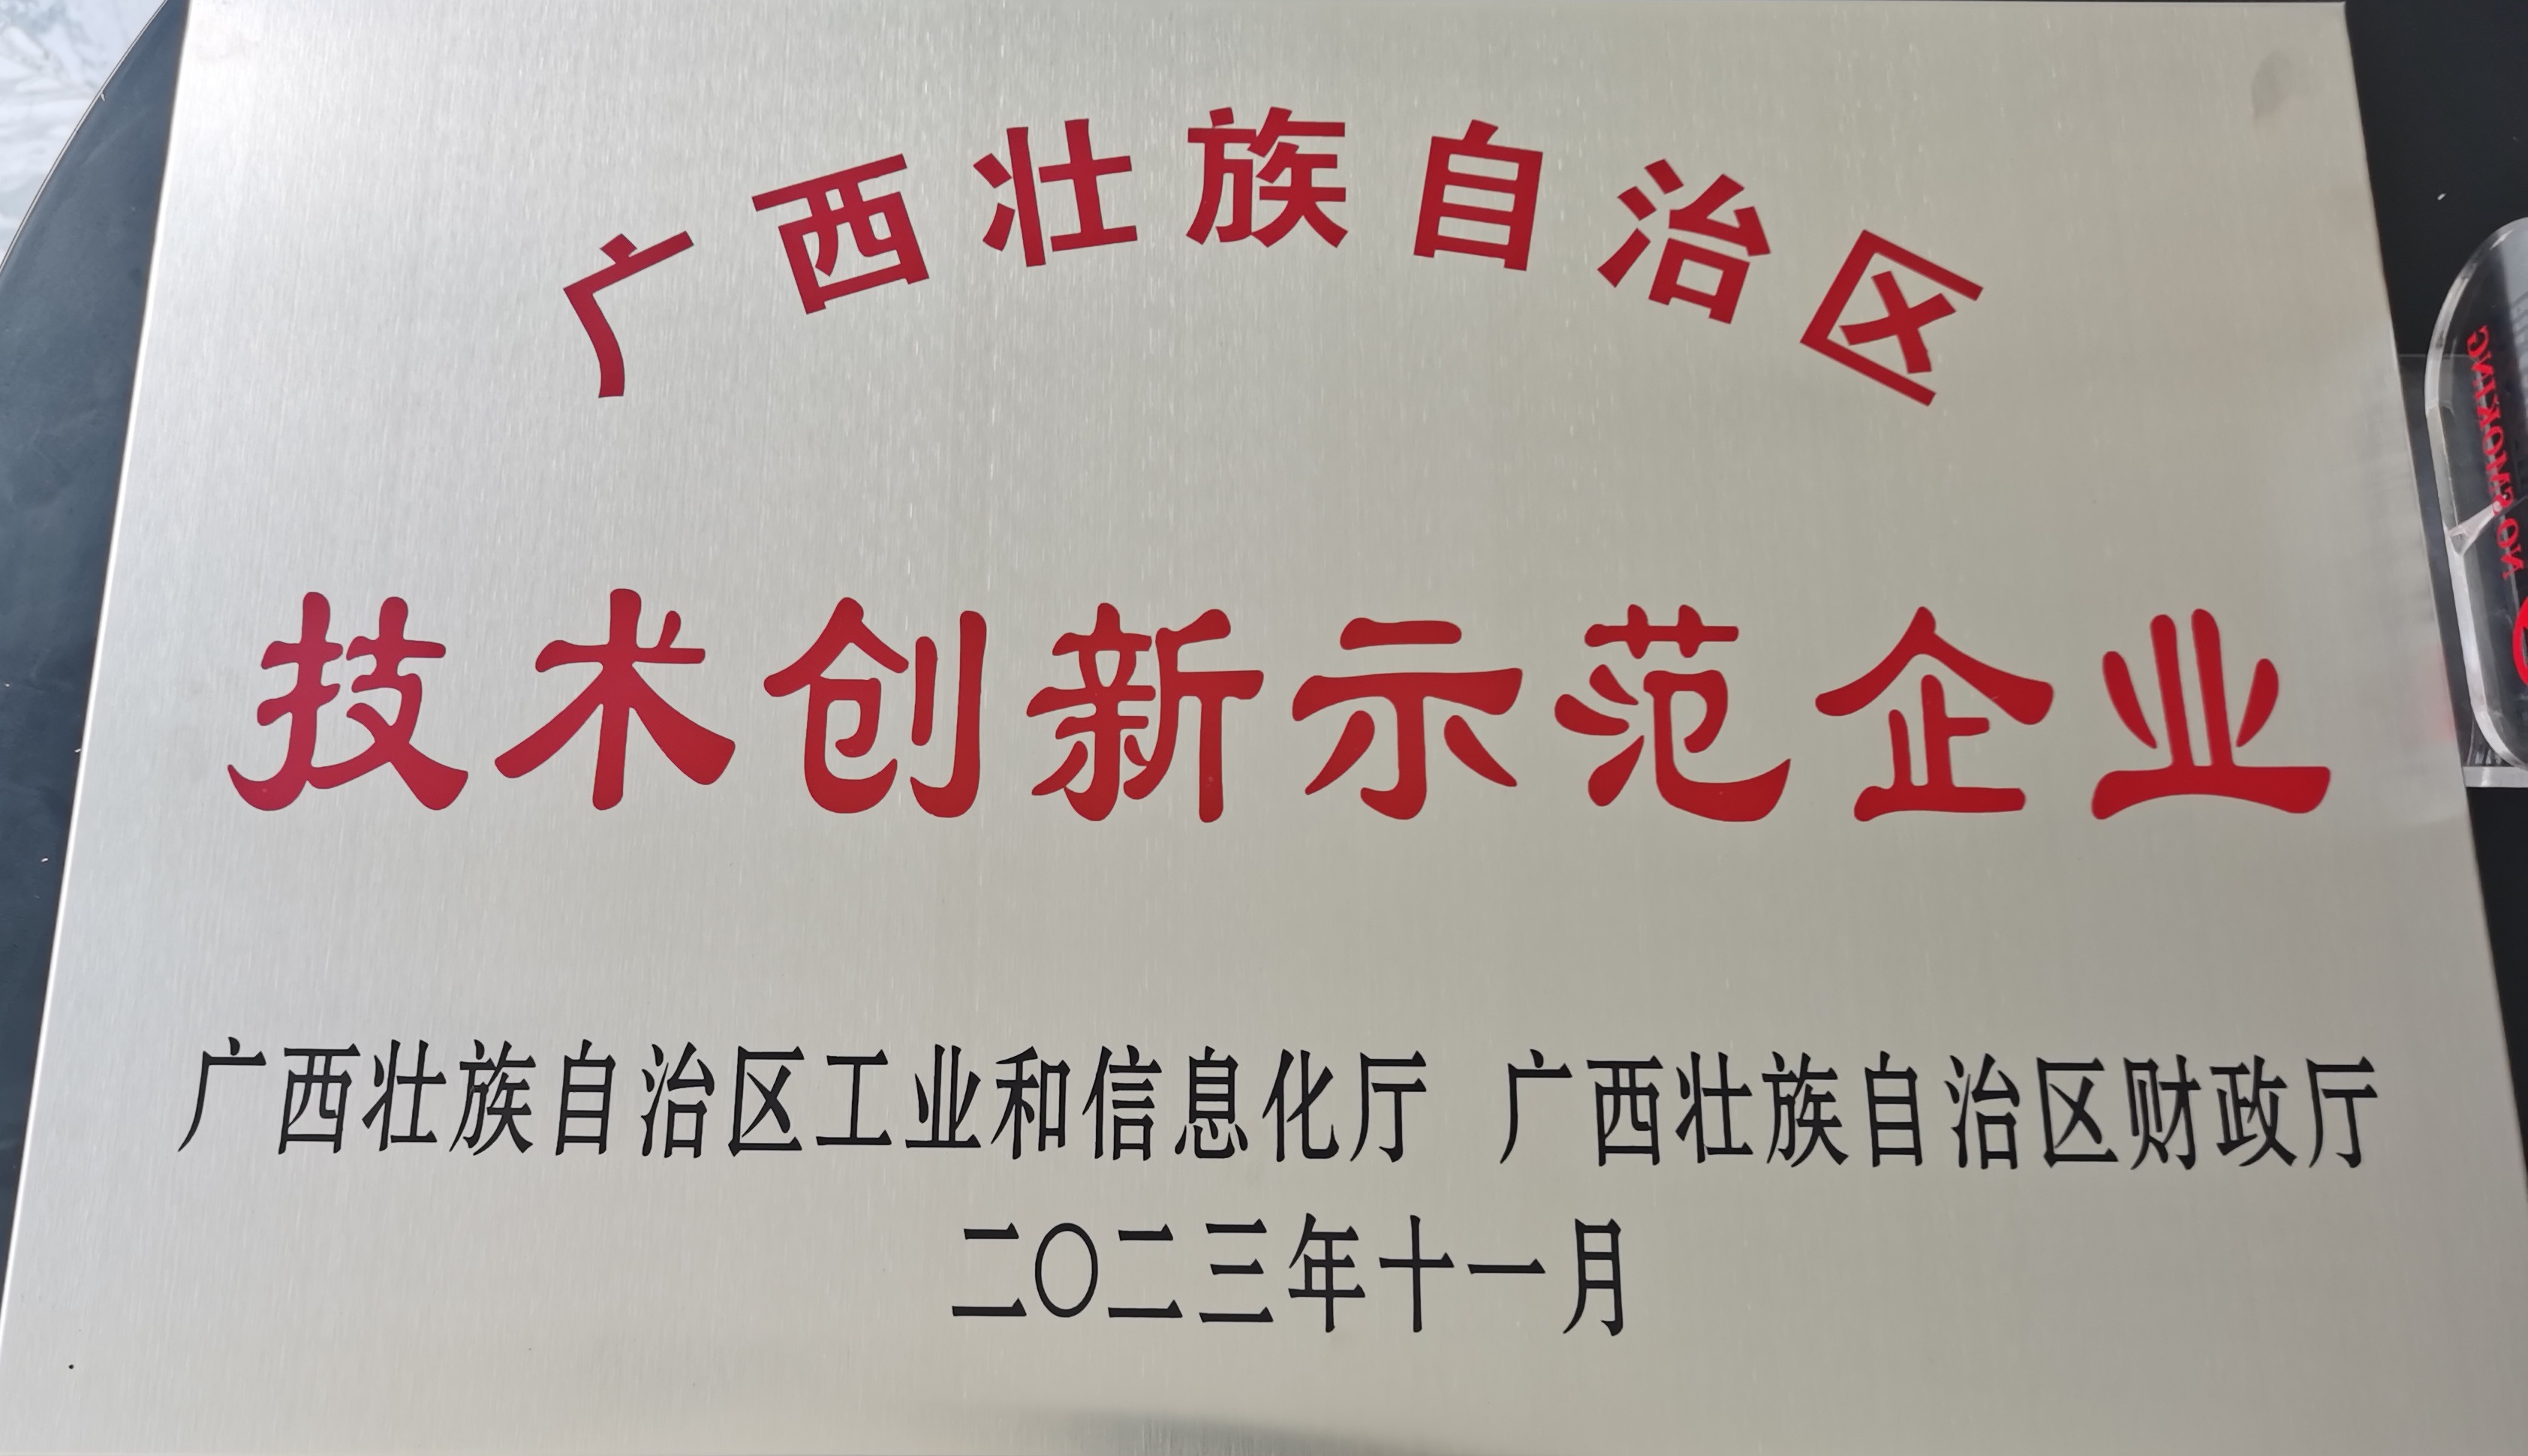 喜报：广西青龙被认定为技术创新示范企业